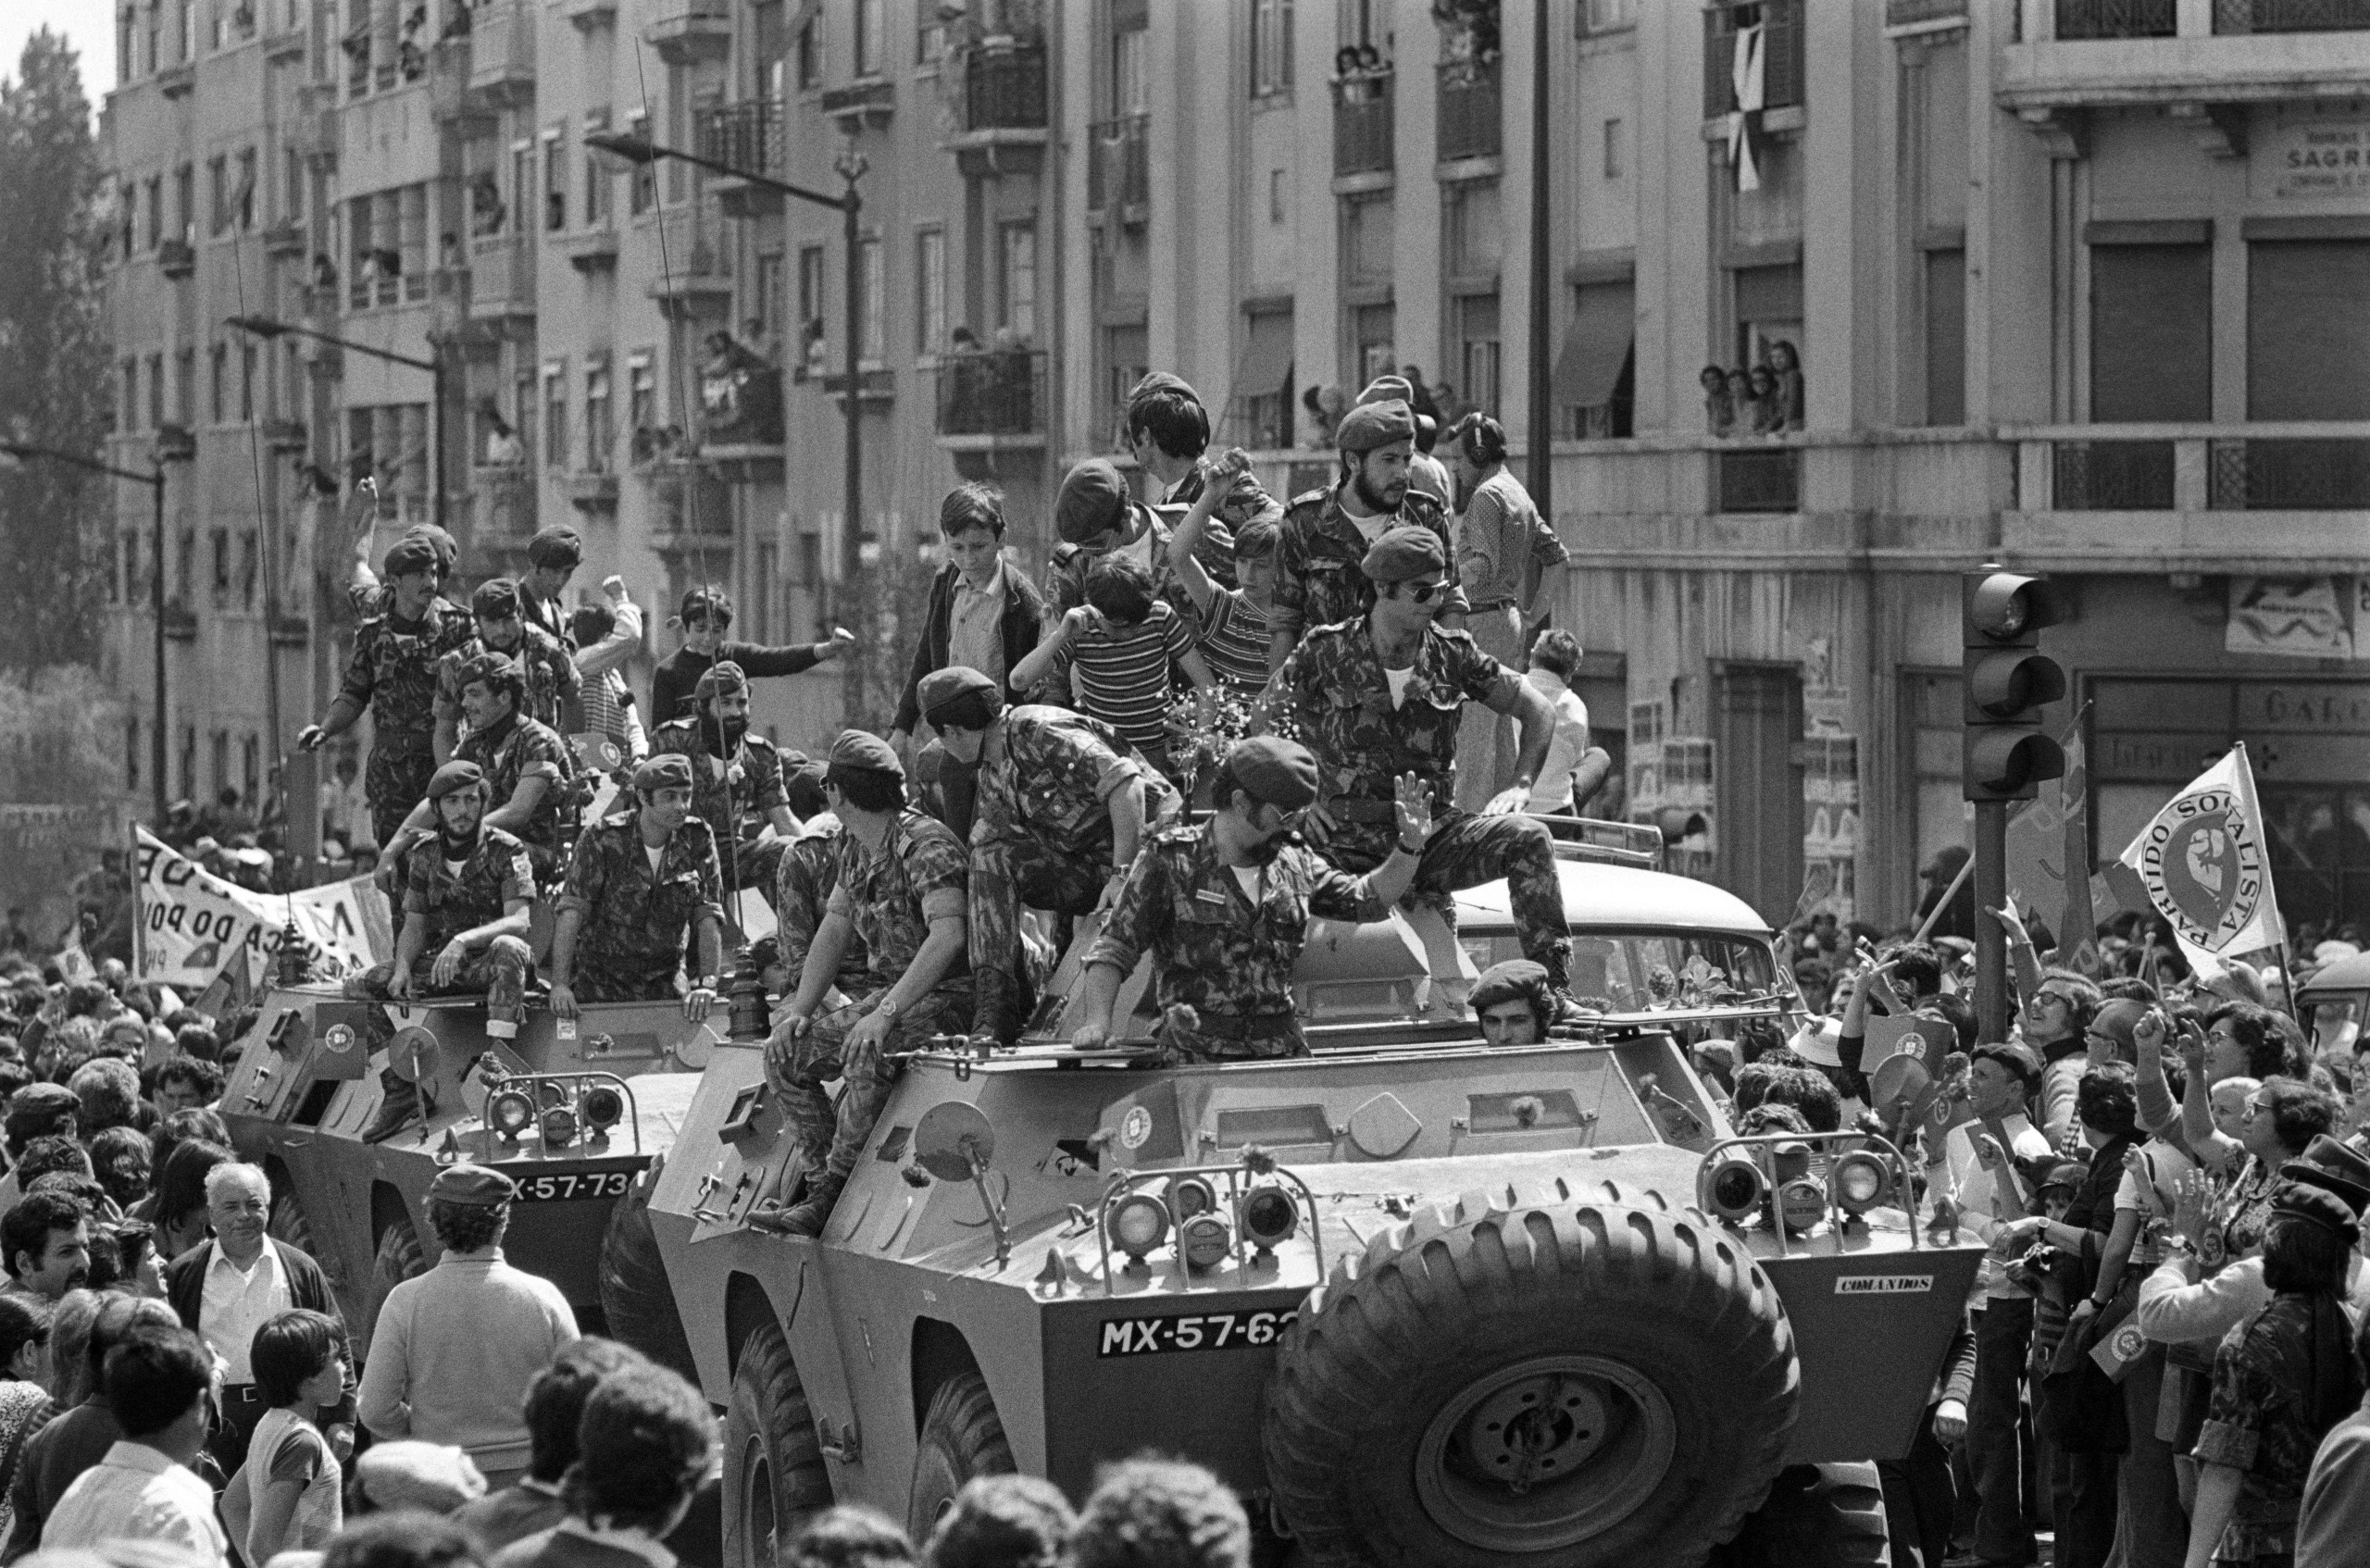 neilikkavallankumous muutti portugalin demokratiaksi 50 vuotta sitten